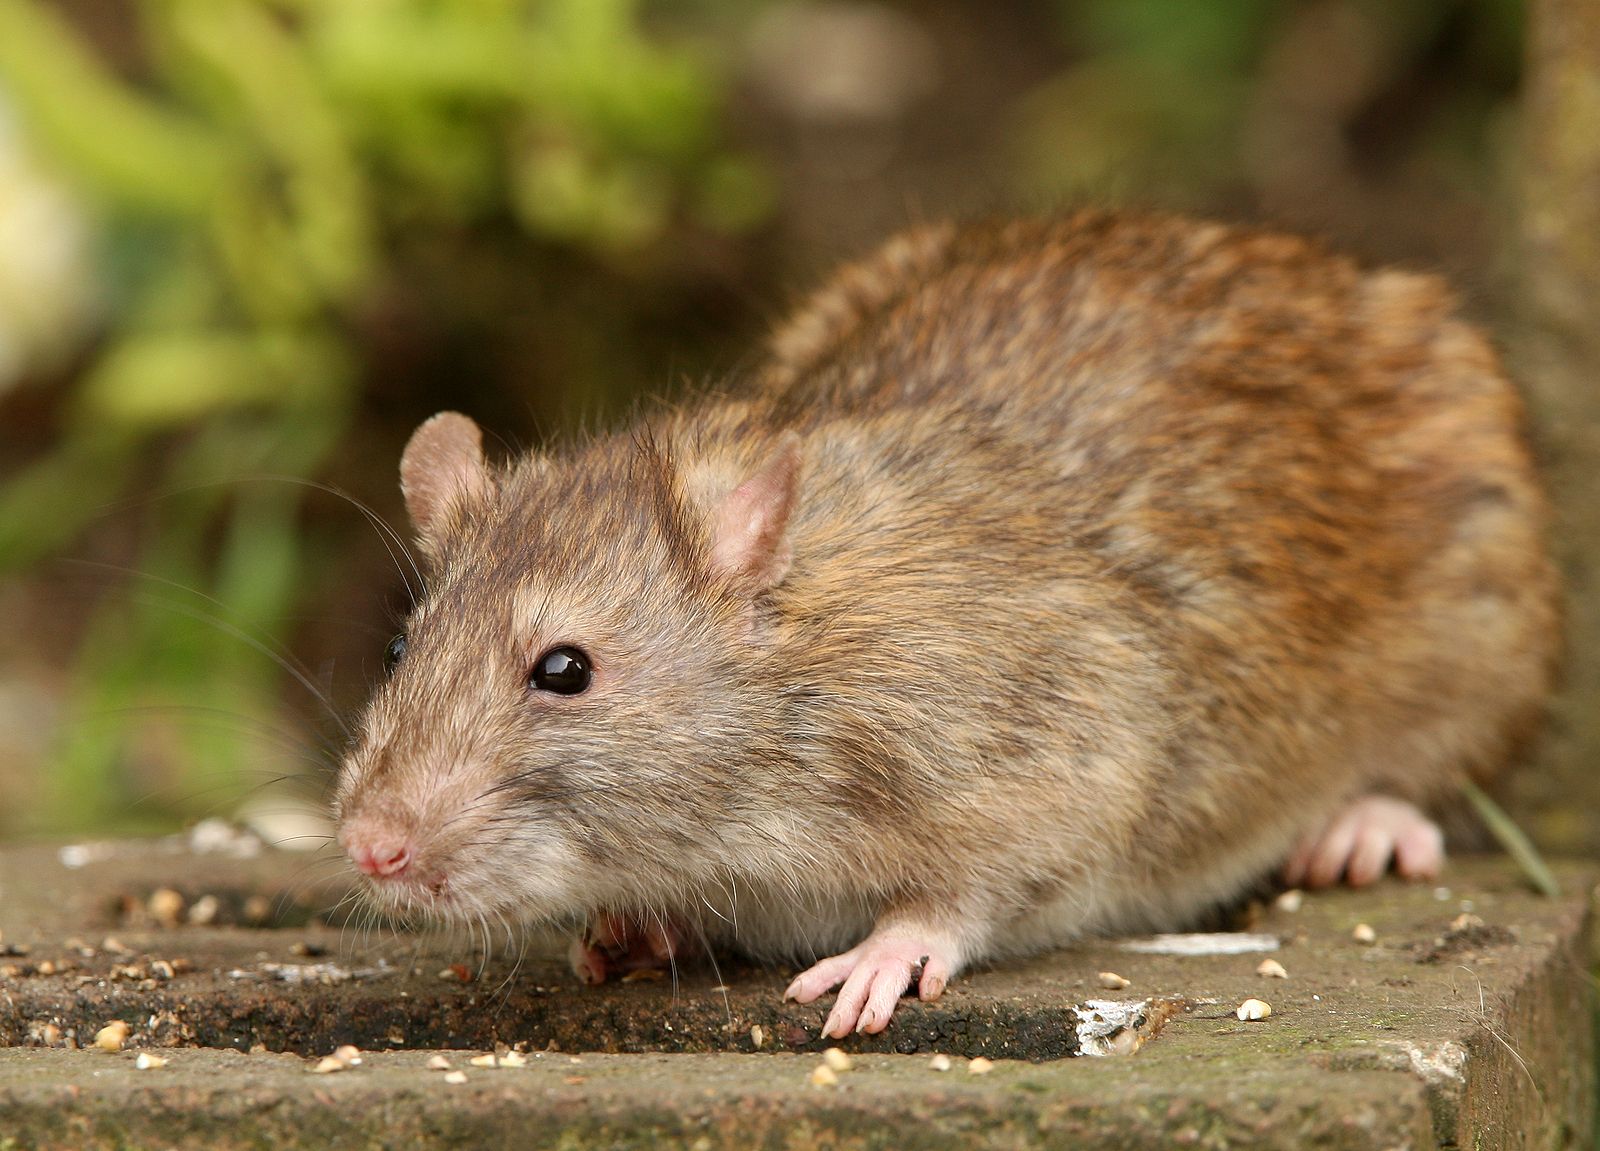 Las ratas pueden imaginar lugares y objetos como los humanos, según un nuevo estudio